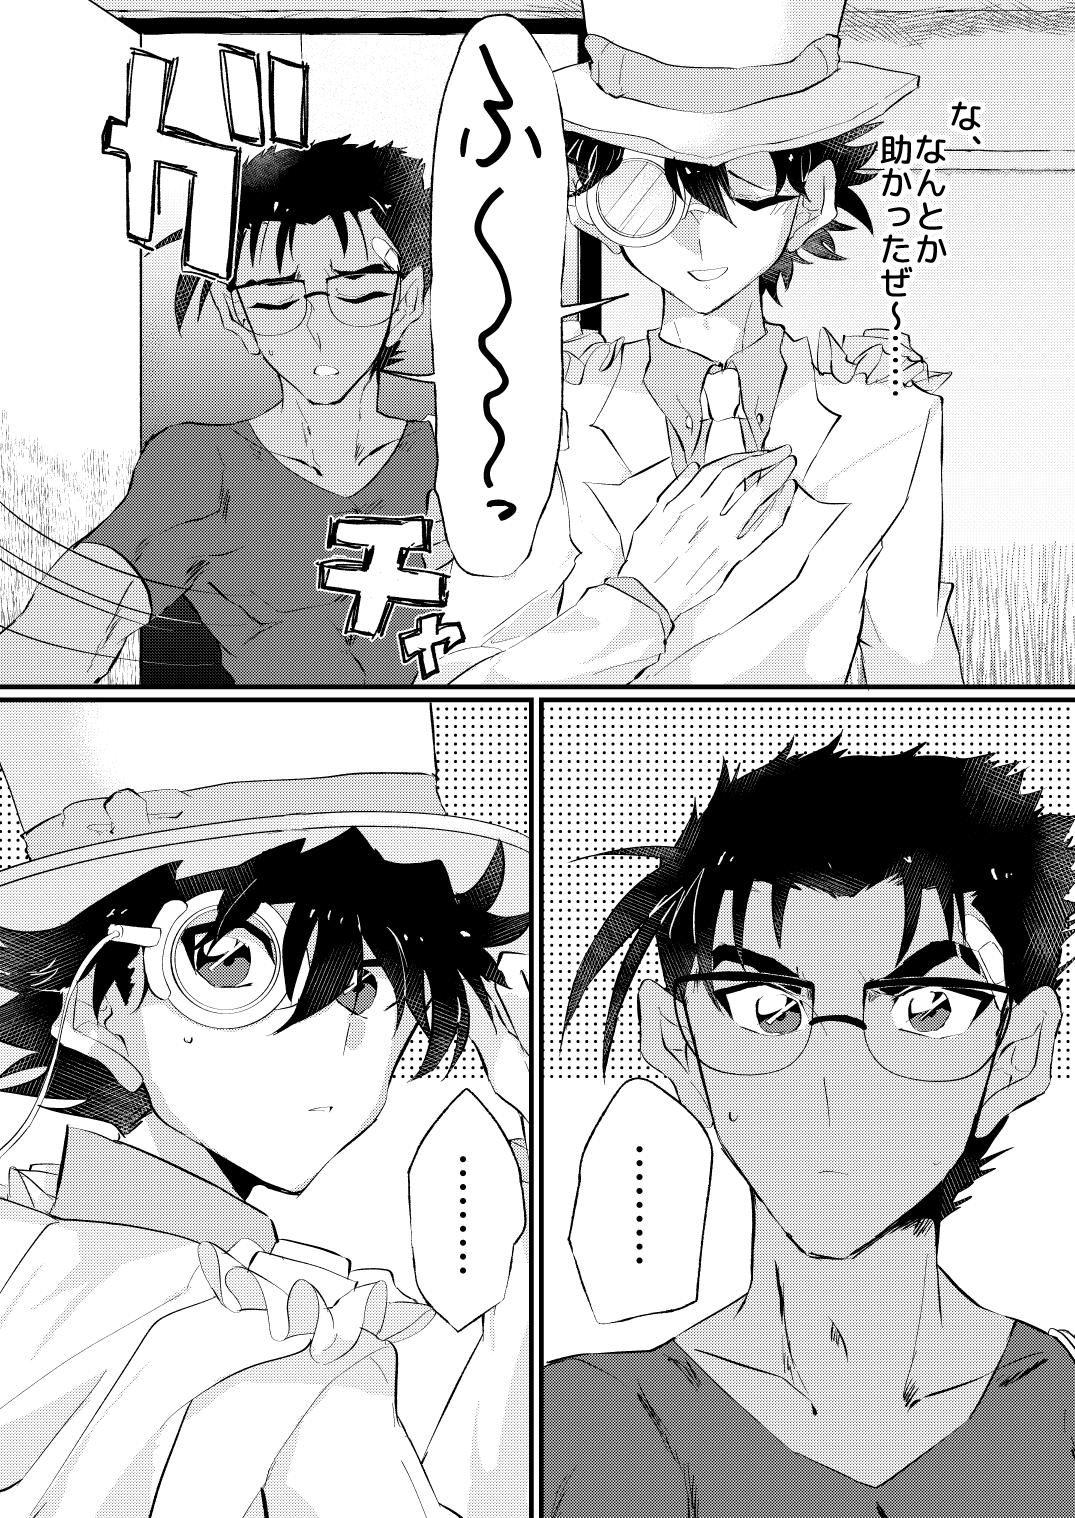 Enema [404] (Detective Conan) [Digital] - Detective conan | meitantei conan Culo - Page 6